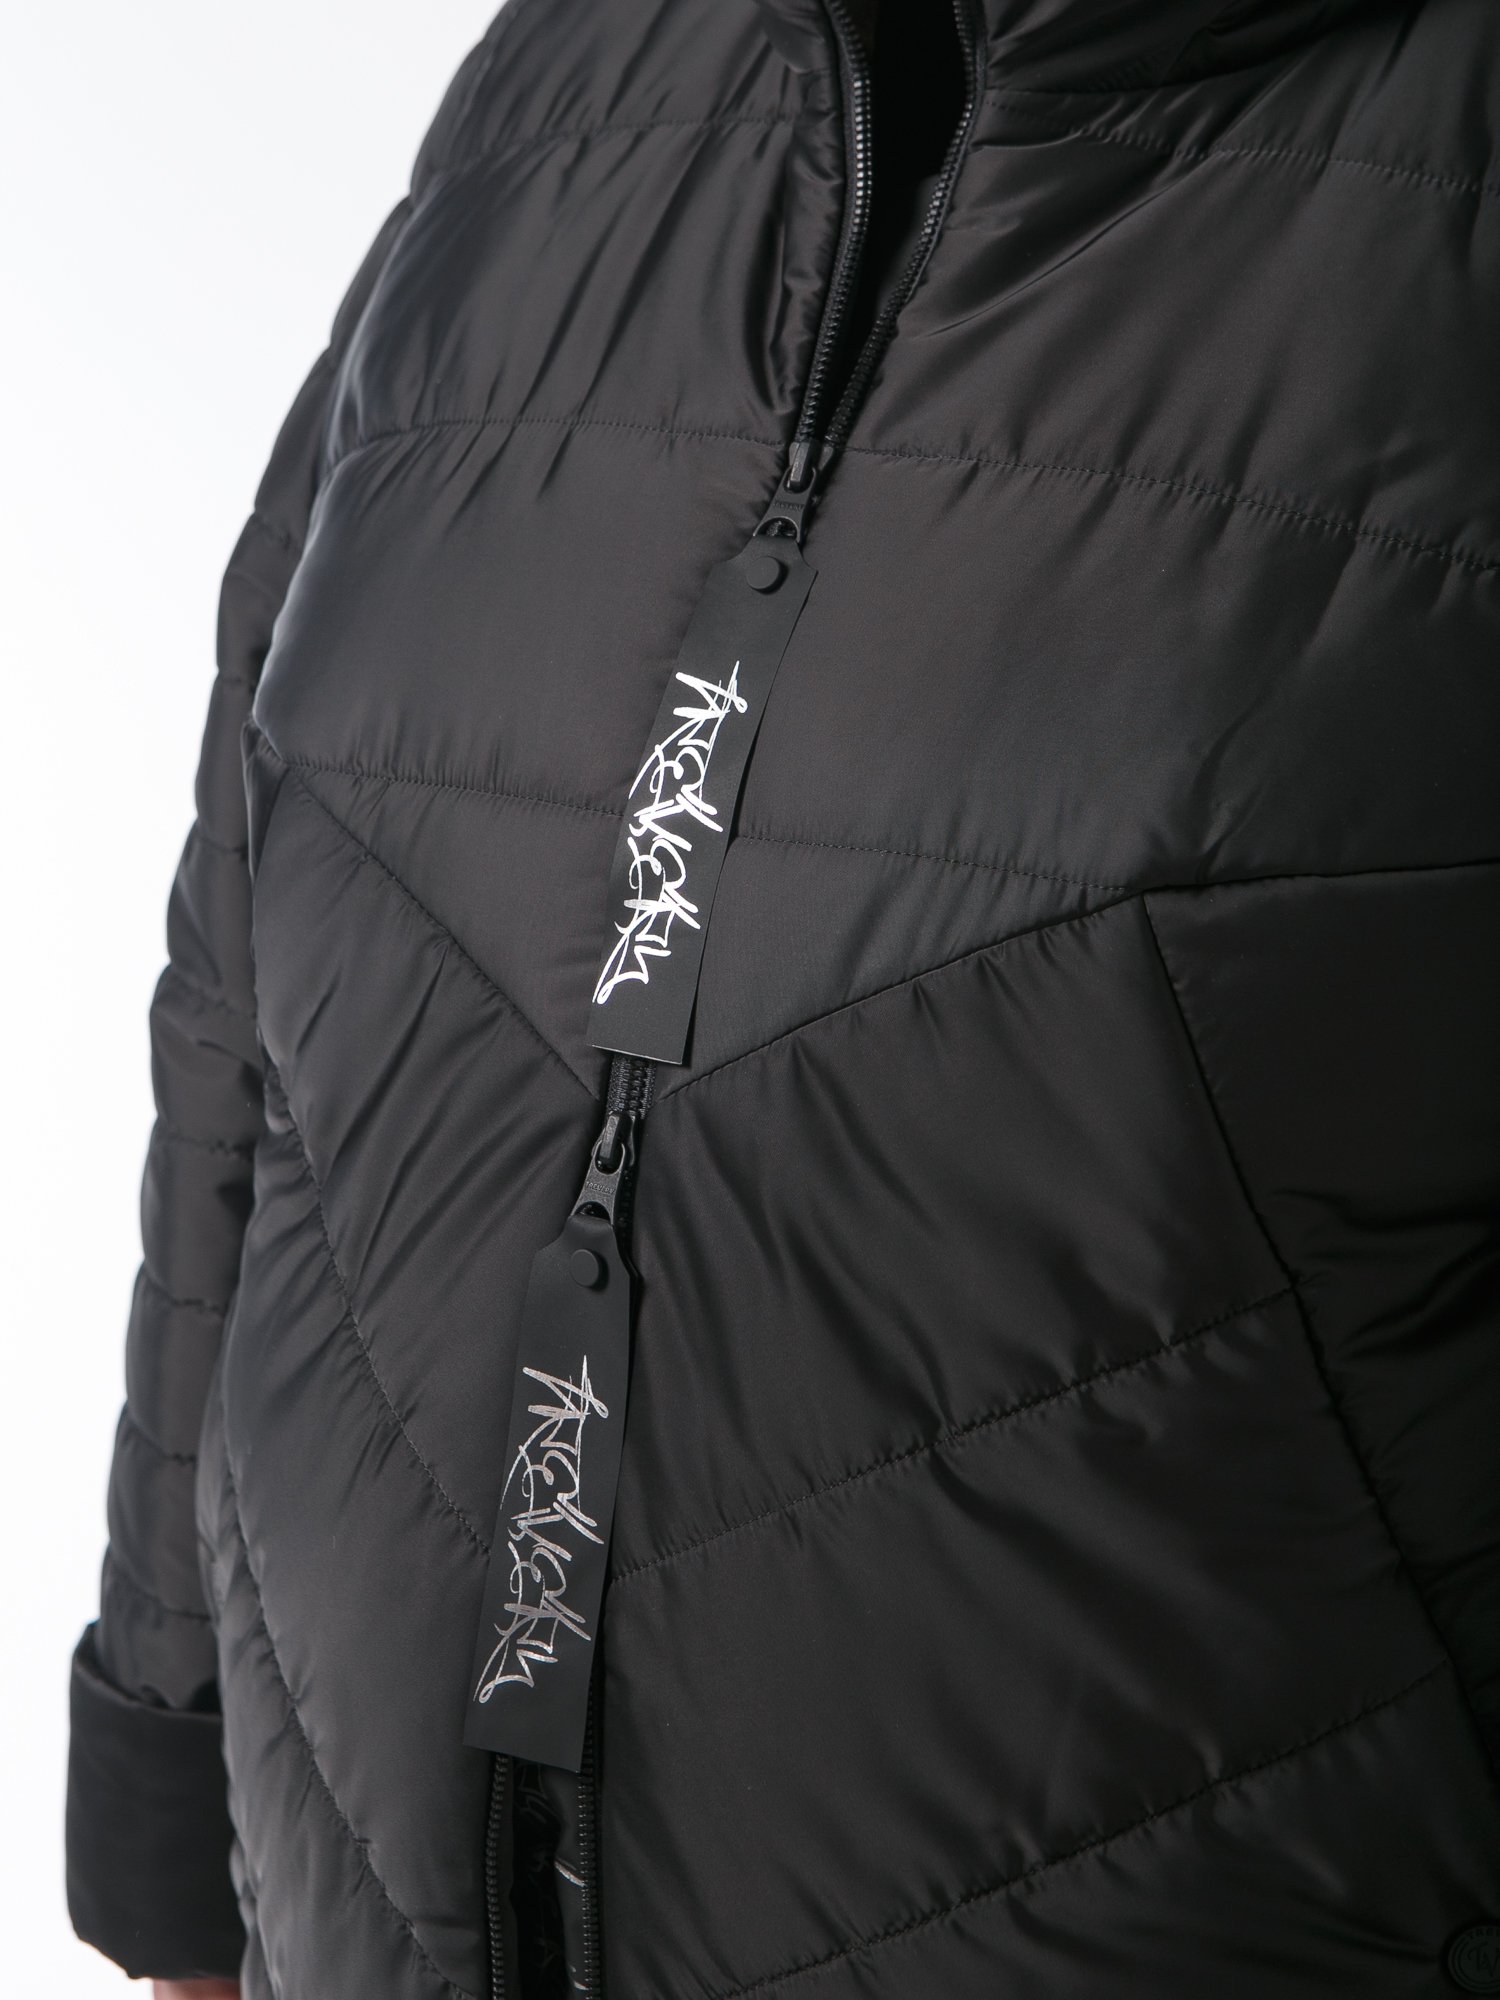 Пальто из комбинированной стеганной ткани черного цвета с брендированными лентами, цвет черный в интернет-магазине Фабрики Тревери